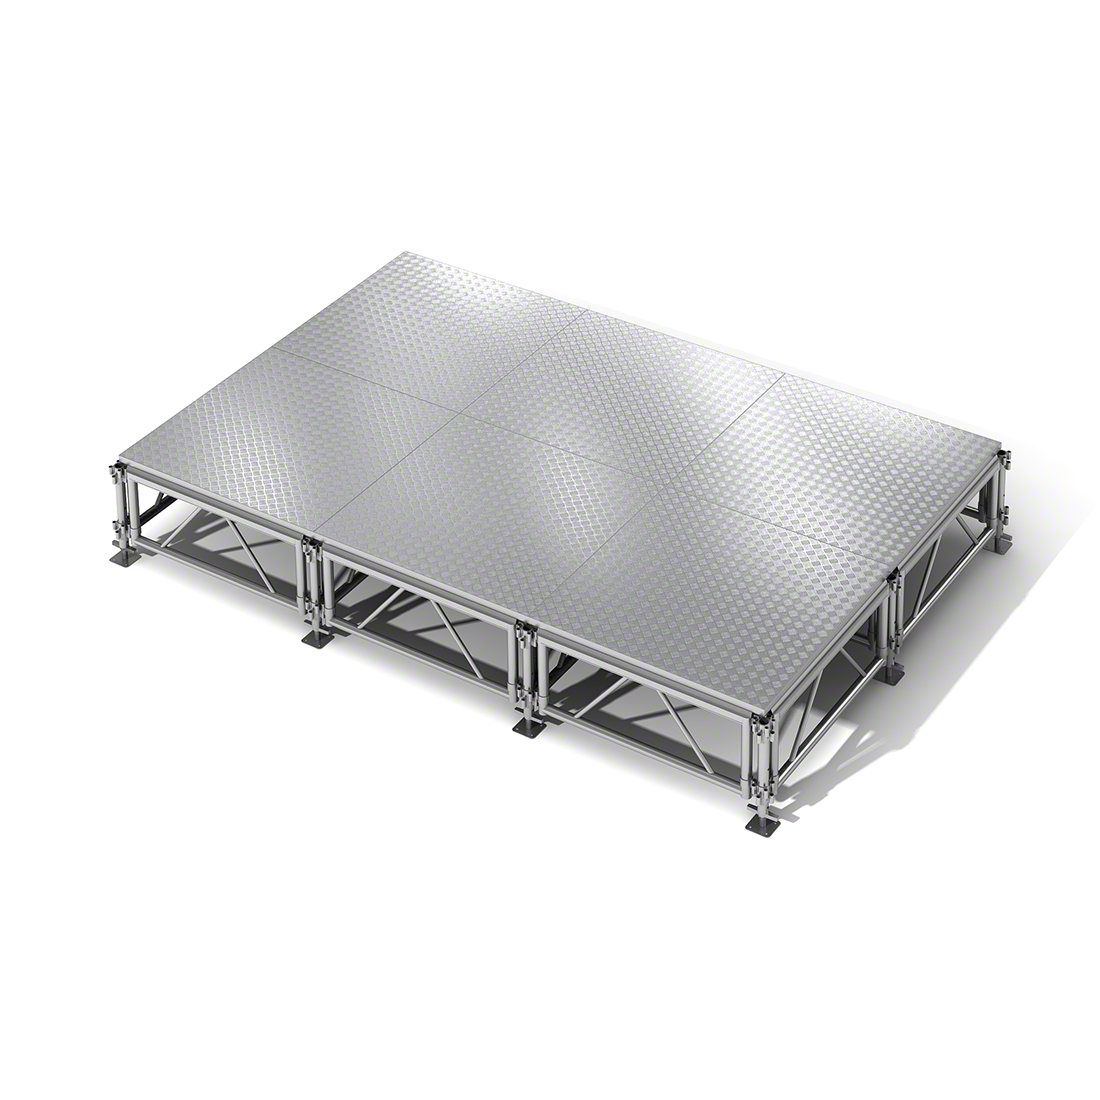 NPS® TransFix 12'x8' Hardboard Stage Kit, 16-24 High @ StageDrop